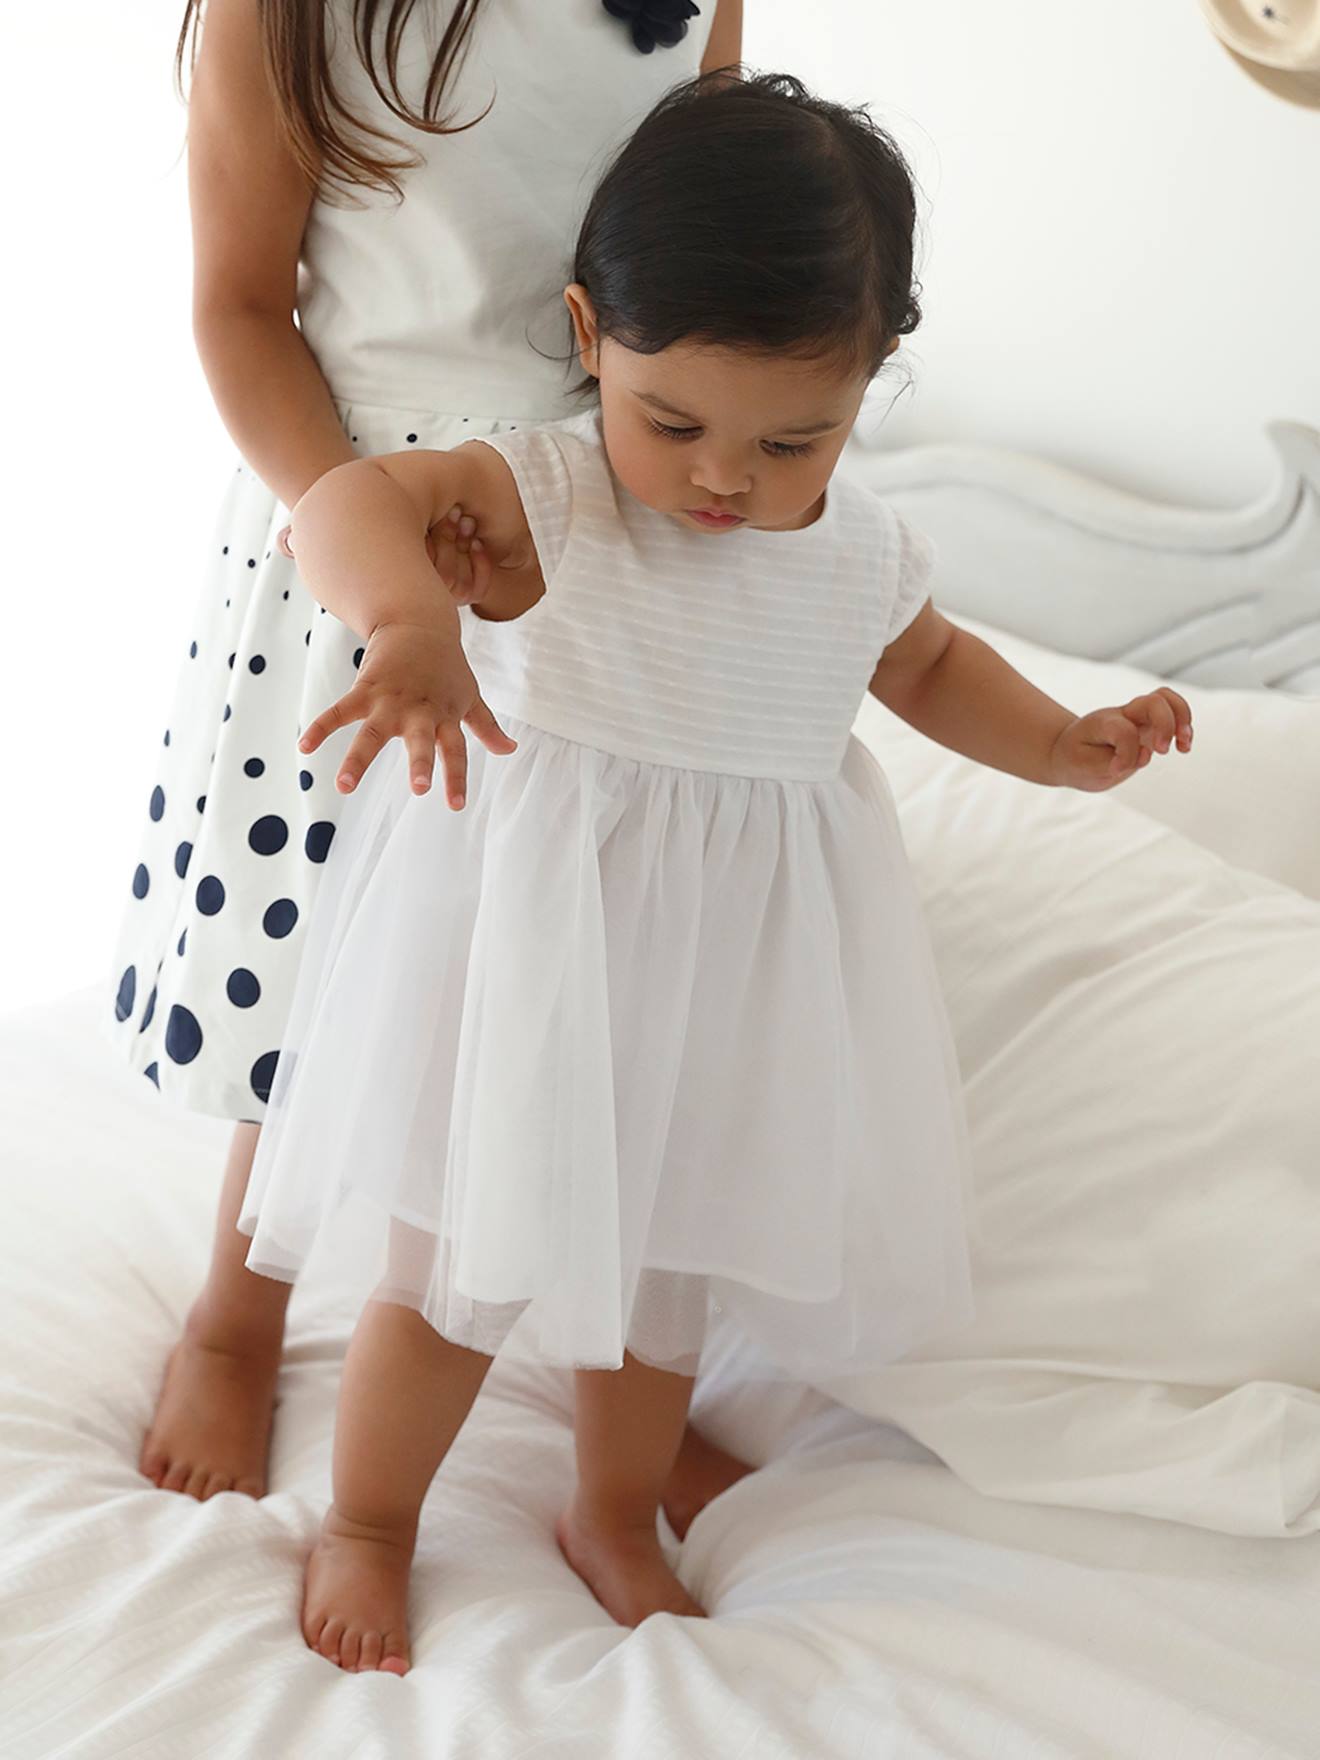 Vestido blanco de bebé, Ceremonia bebé